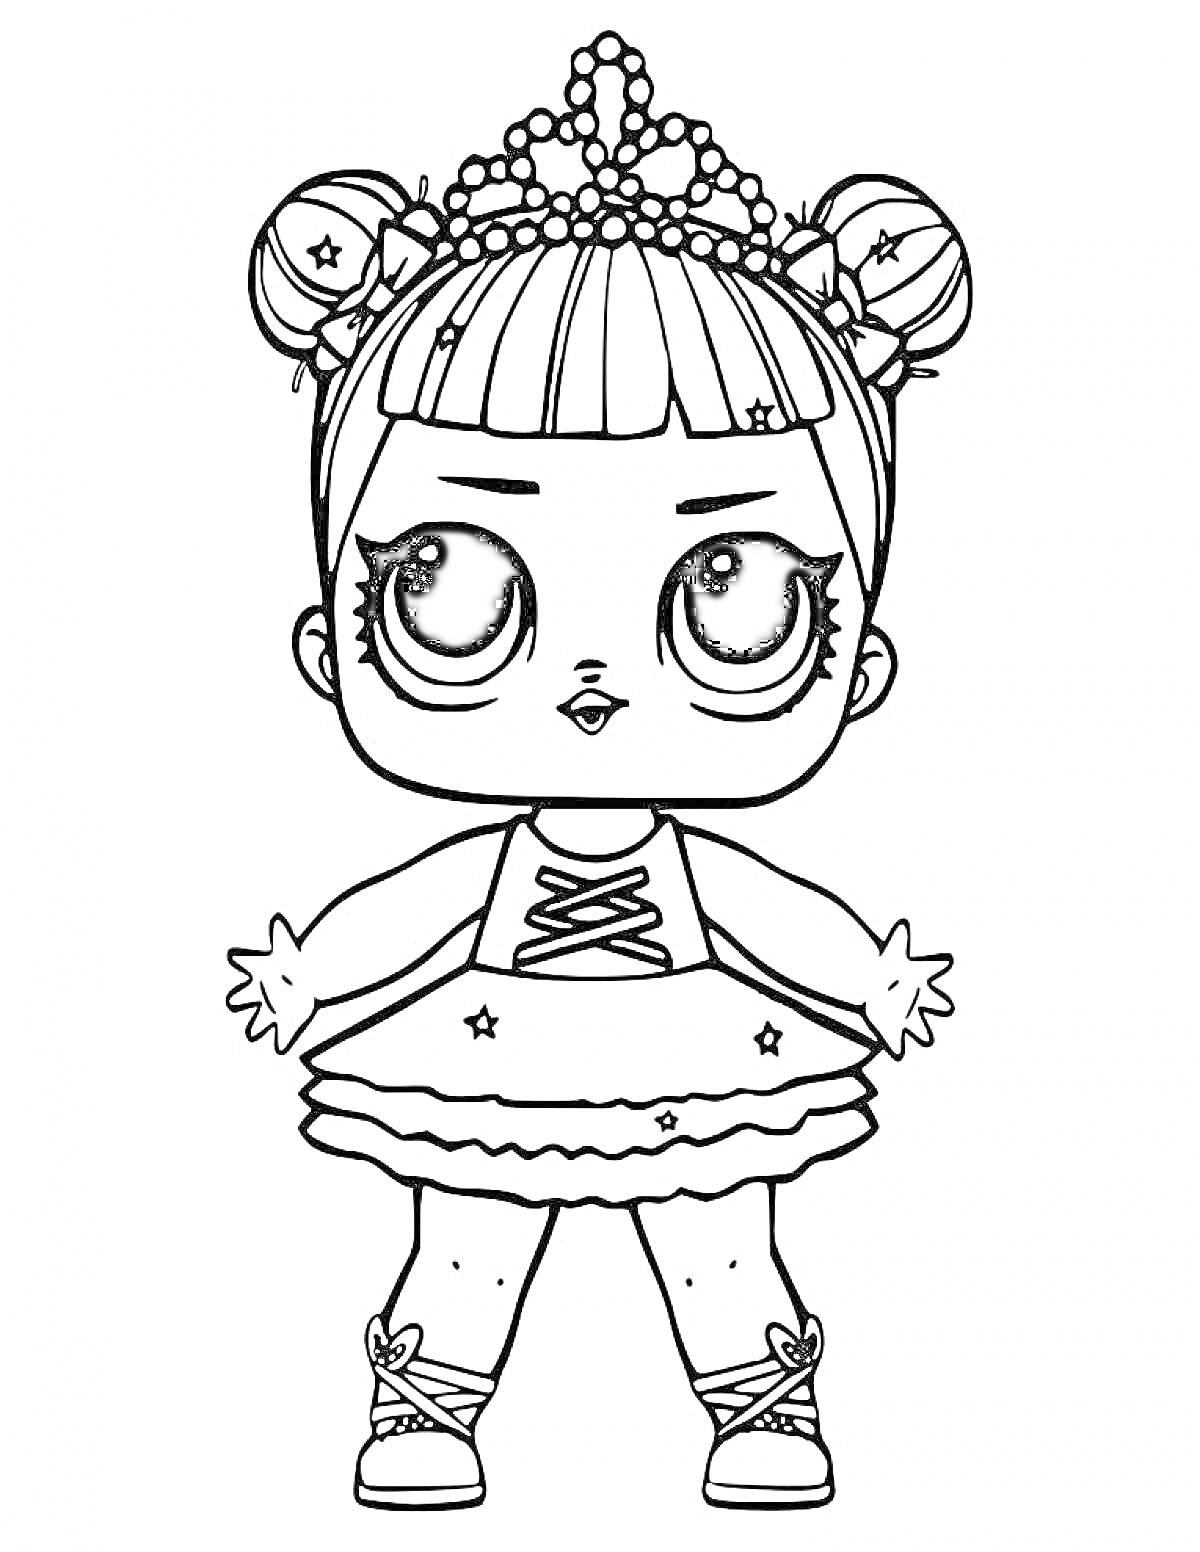 Раскраска Девочка ЛОЛ в тиаре с игрушечной палочкой, в платье с юбкой и кроссовках